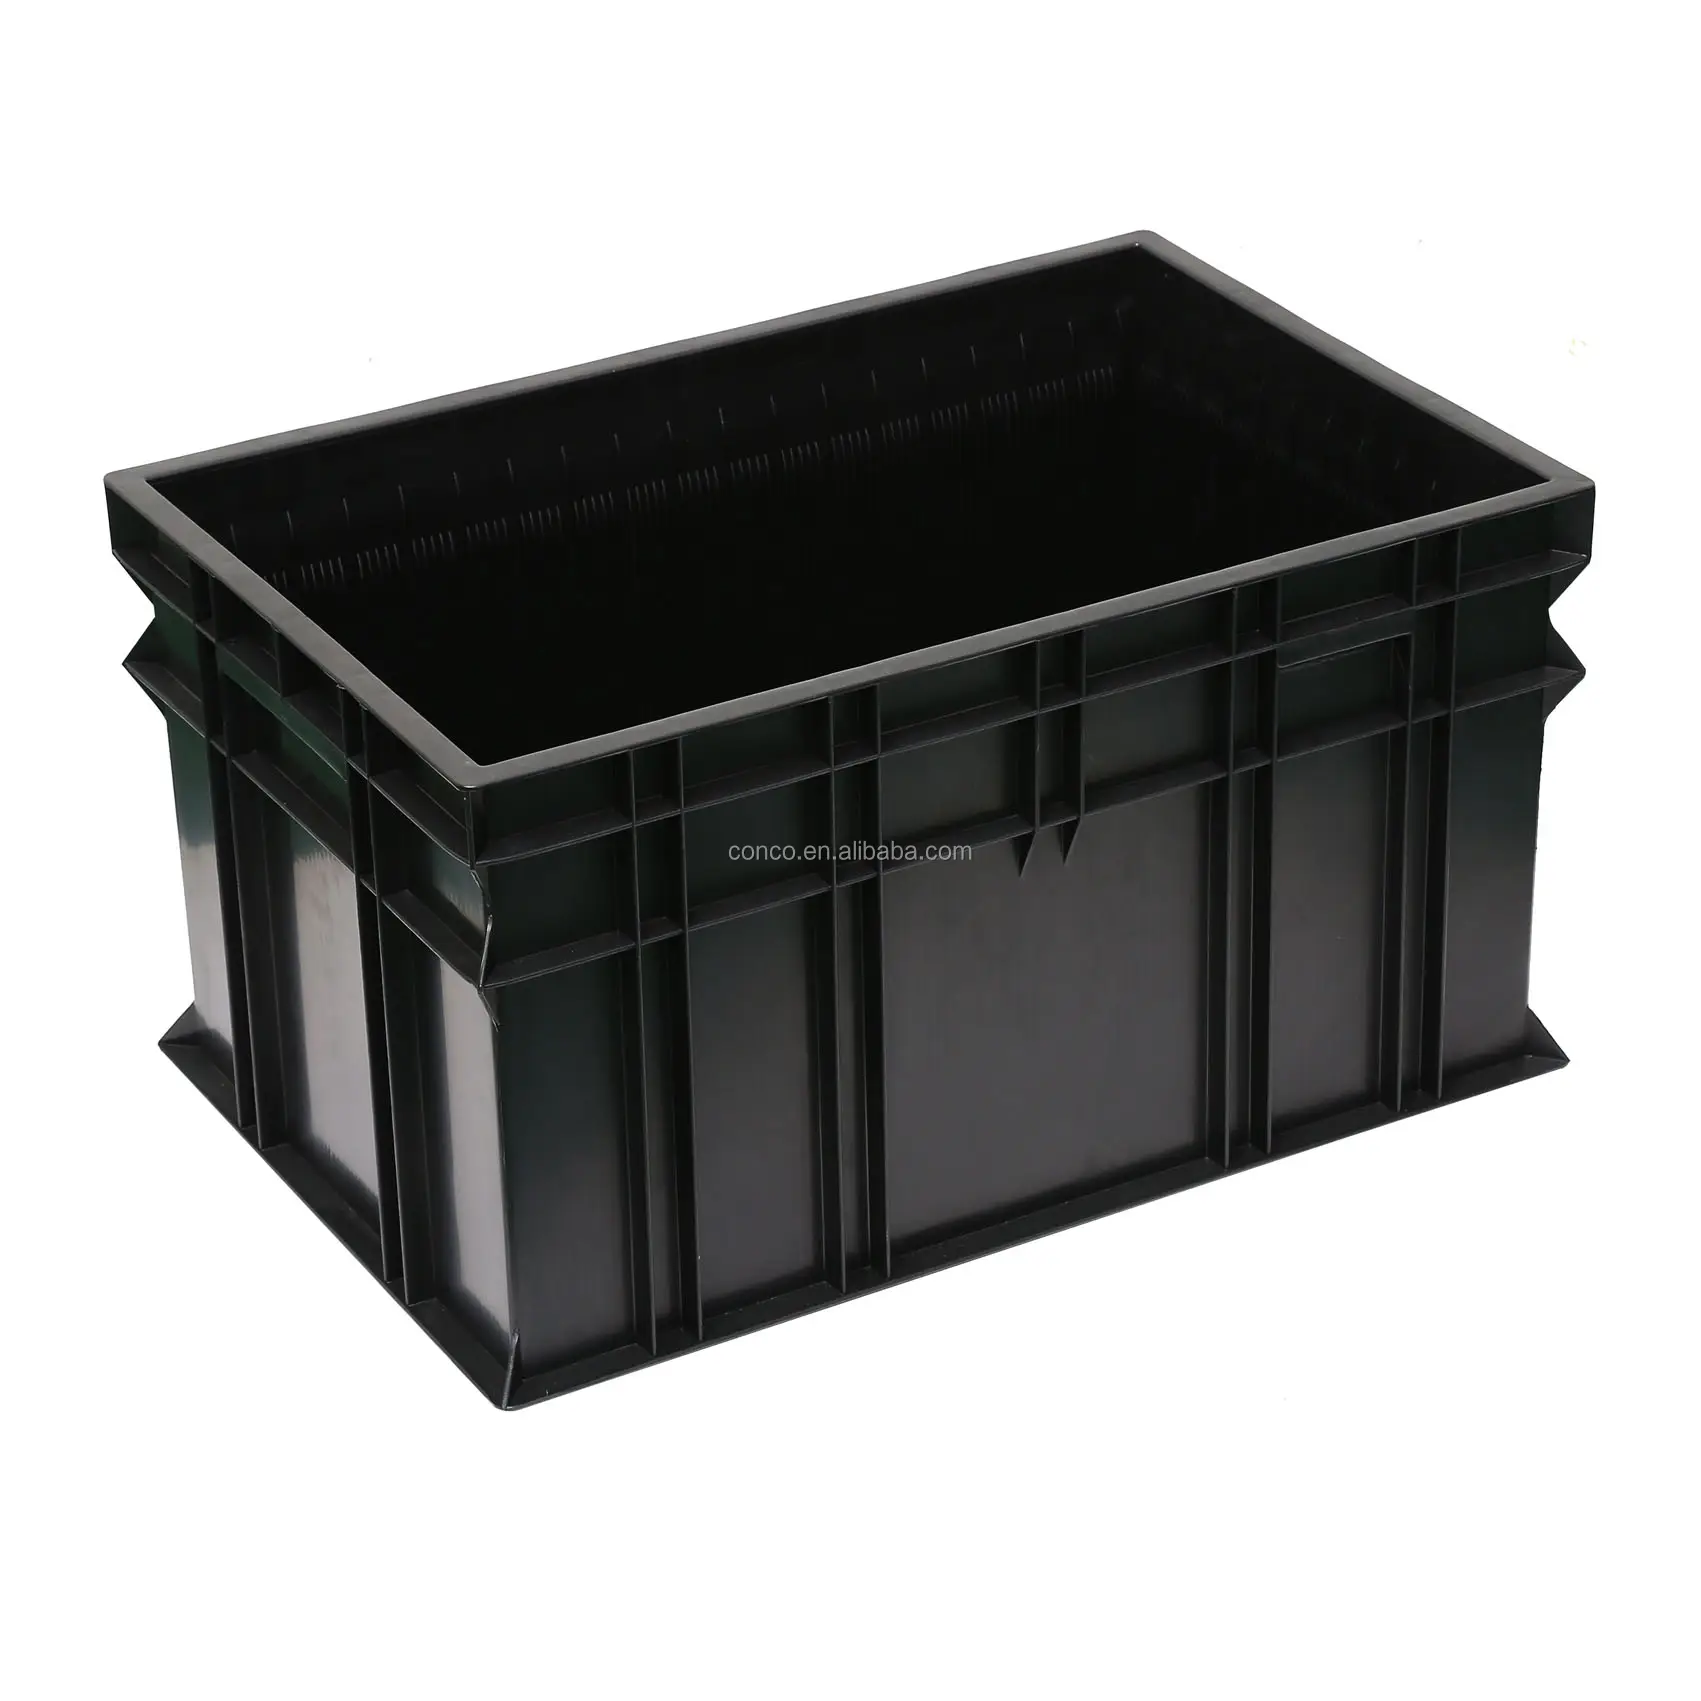 esd box with slots for plastic pcb panels esd bin box